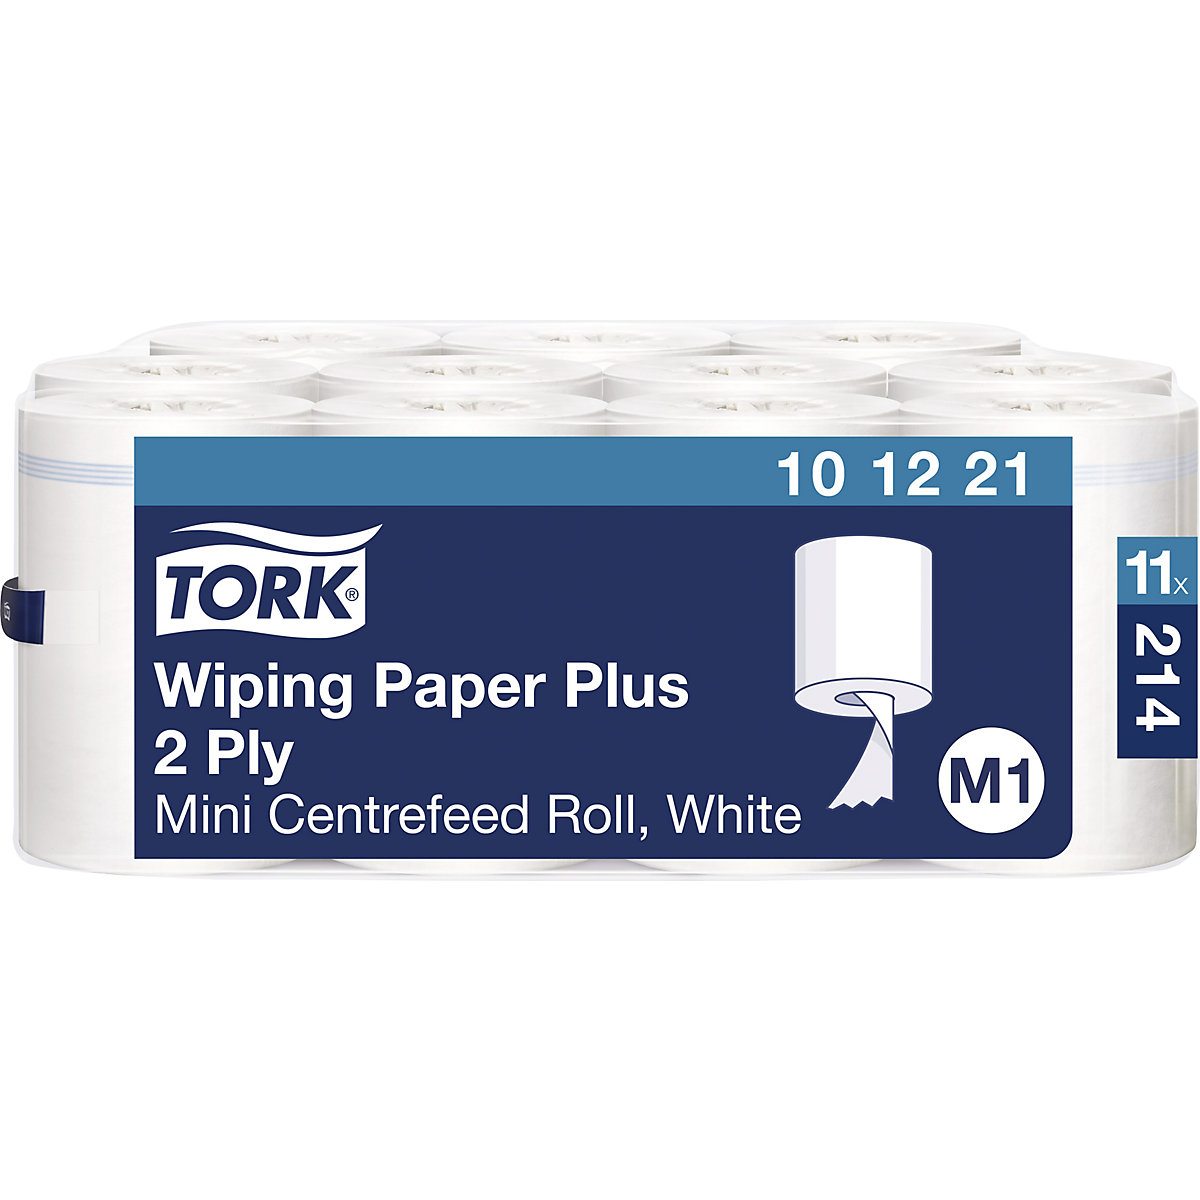 Silné víceúčelové papírové utěrky Mini s vnitřním odvíjením - TORK